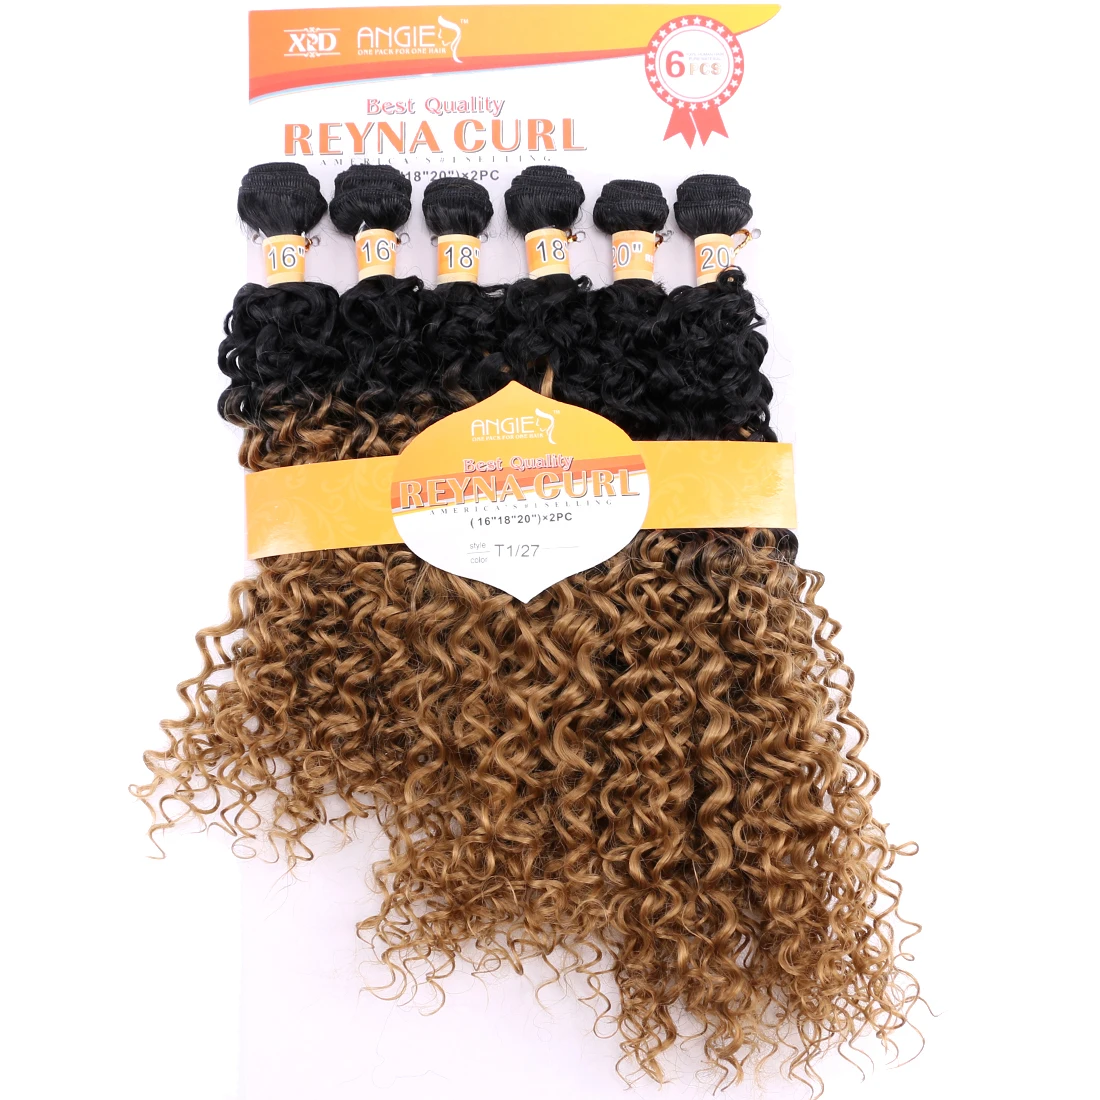 6 unids/set/set de mechones de pelo rizado negro a dorado, dos tonos ombré, tejido sintético de alta temperatura para mujeres negras